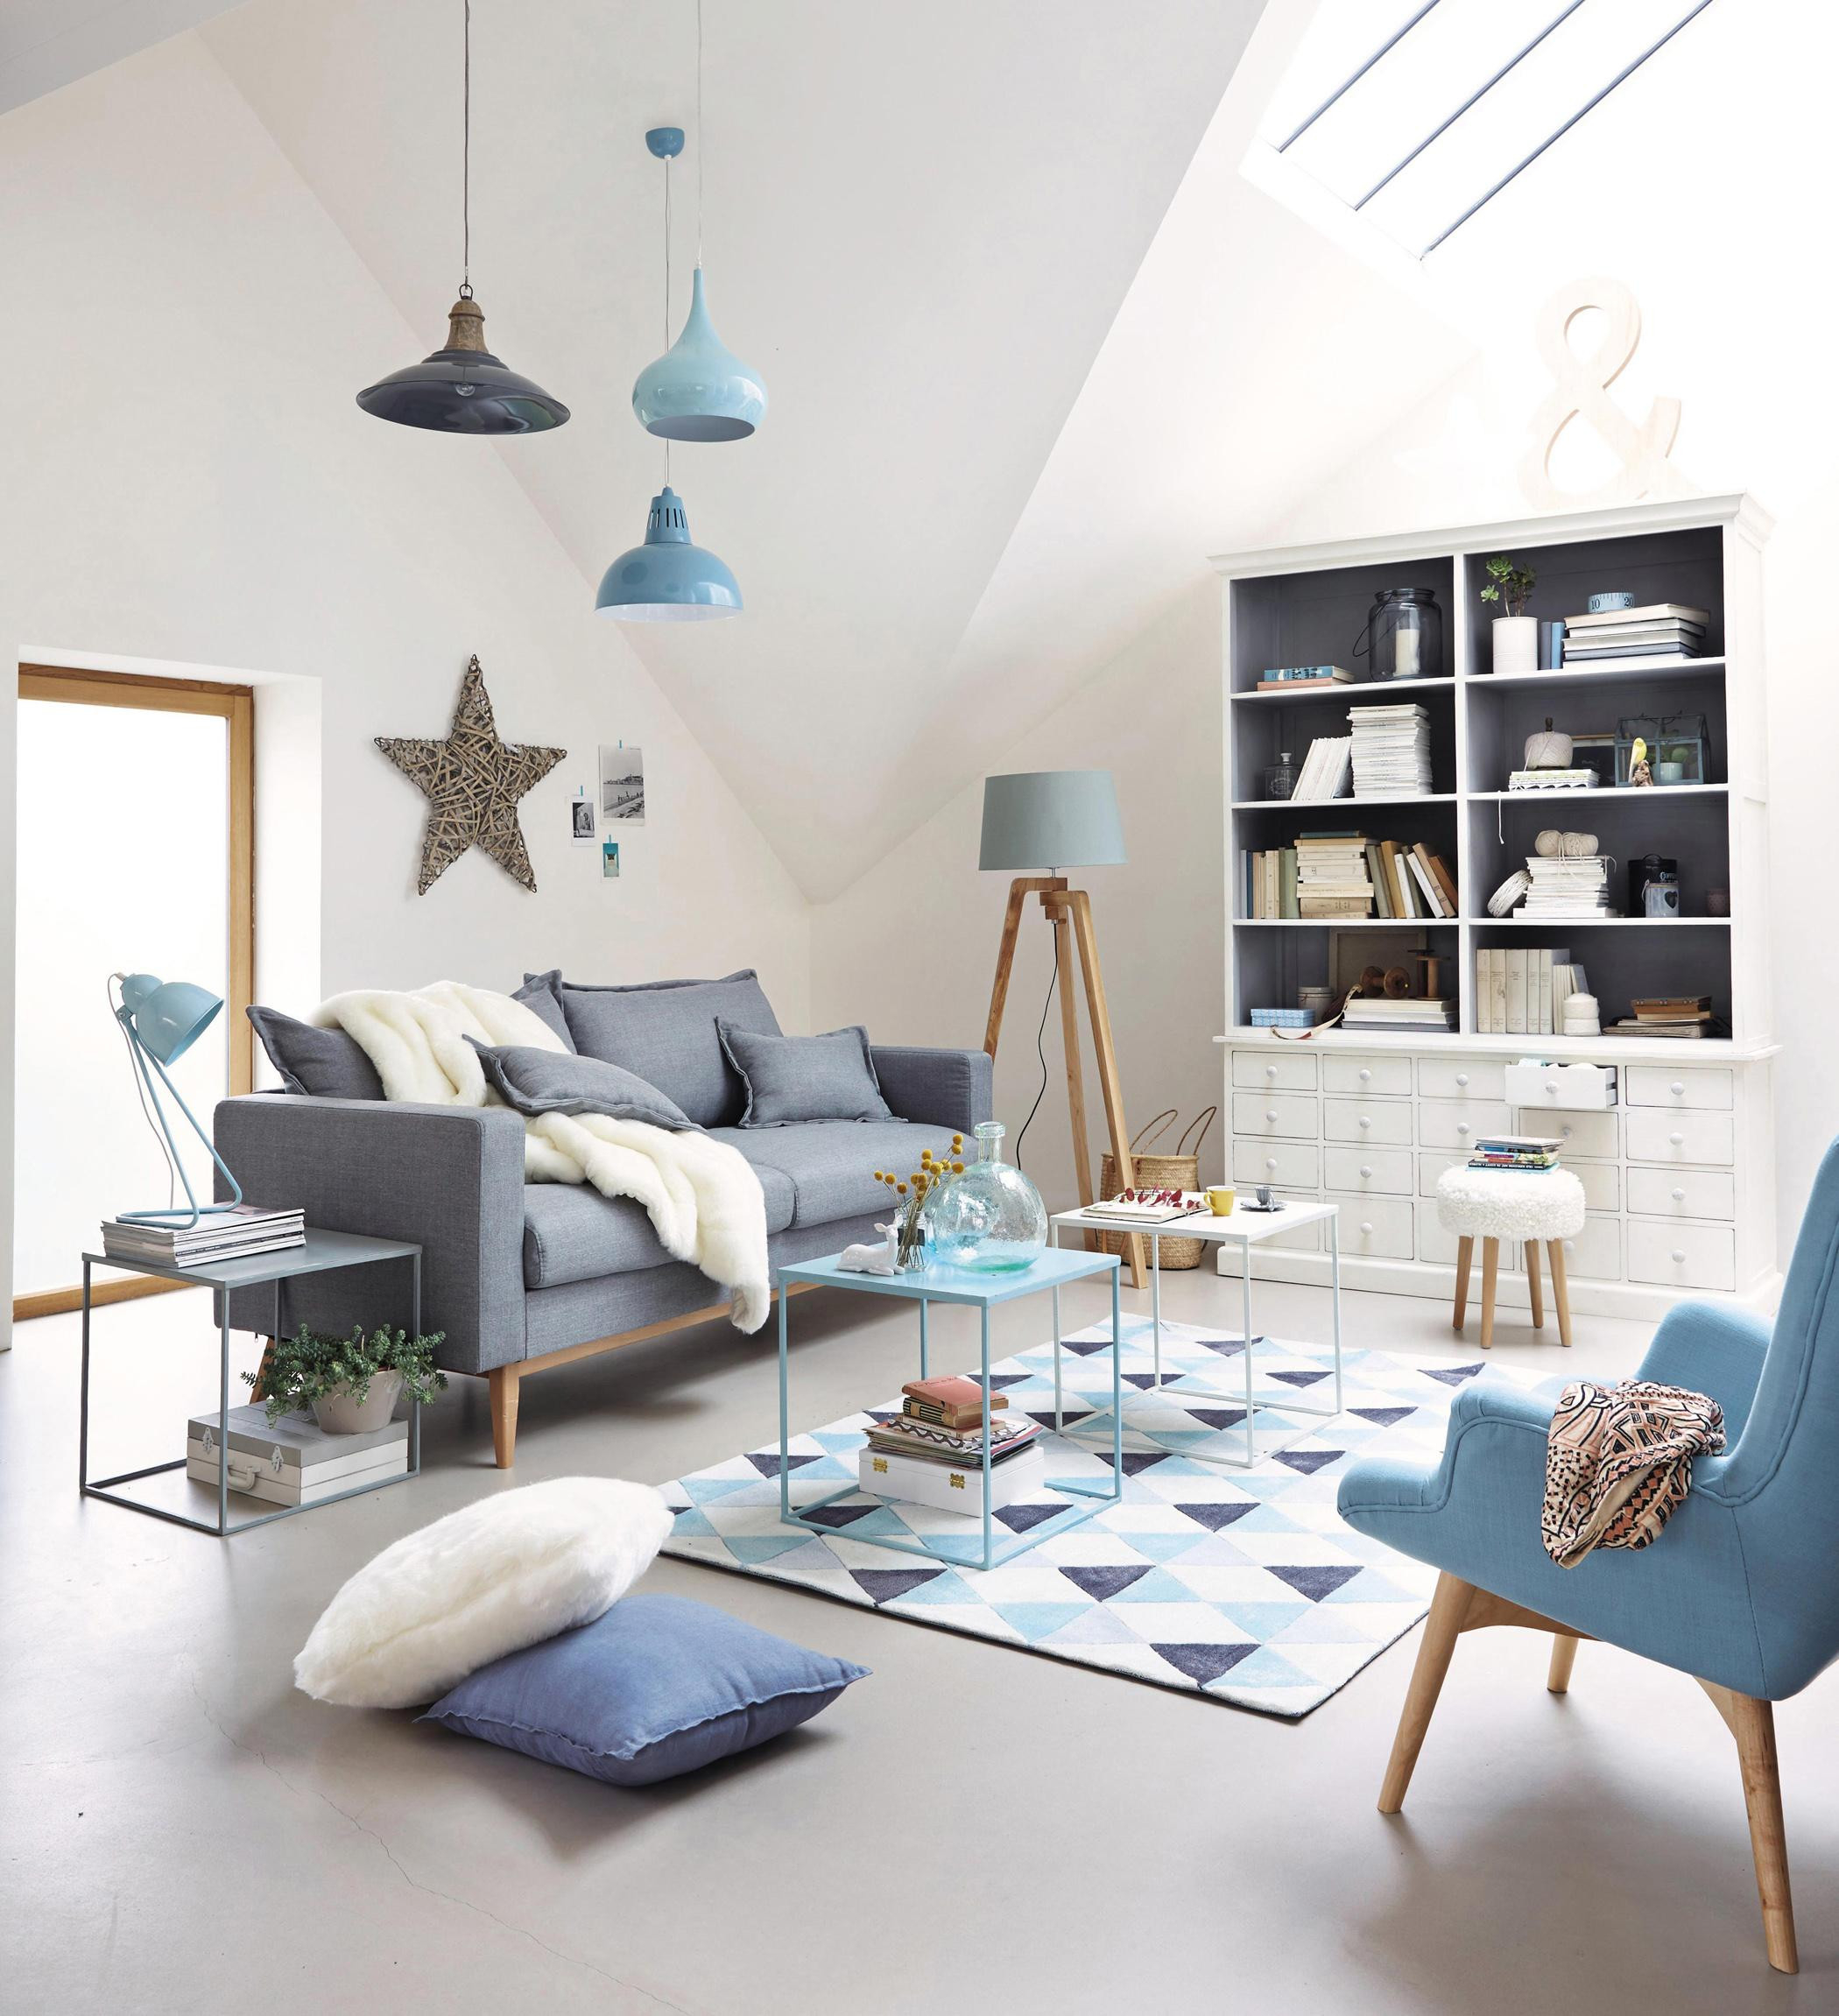 Wohnzimmer In Blau-Grau #Couchtisch #Beistelltisch # regarding Wohnzimmer Blau Grau